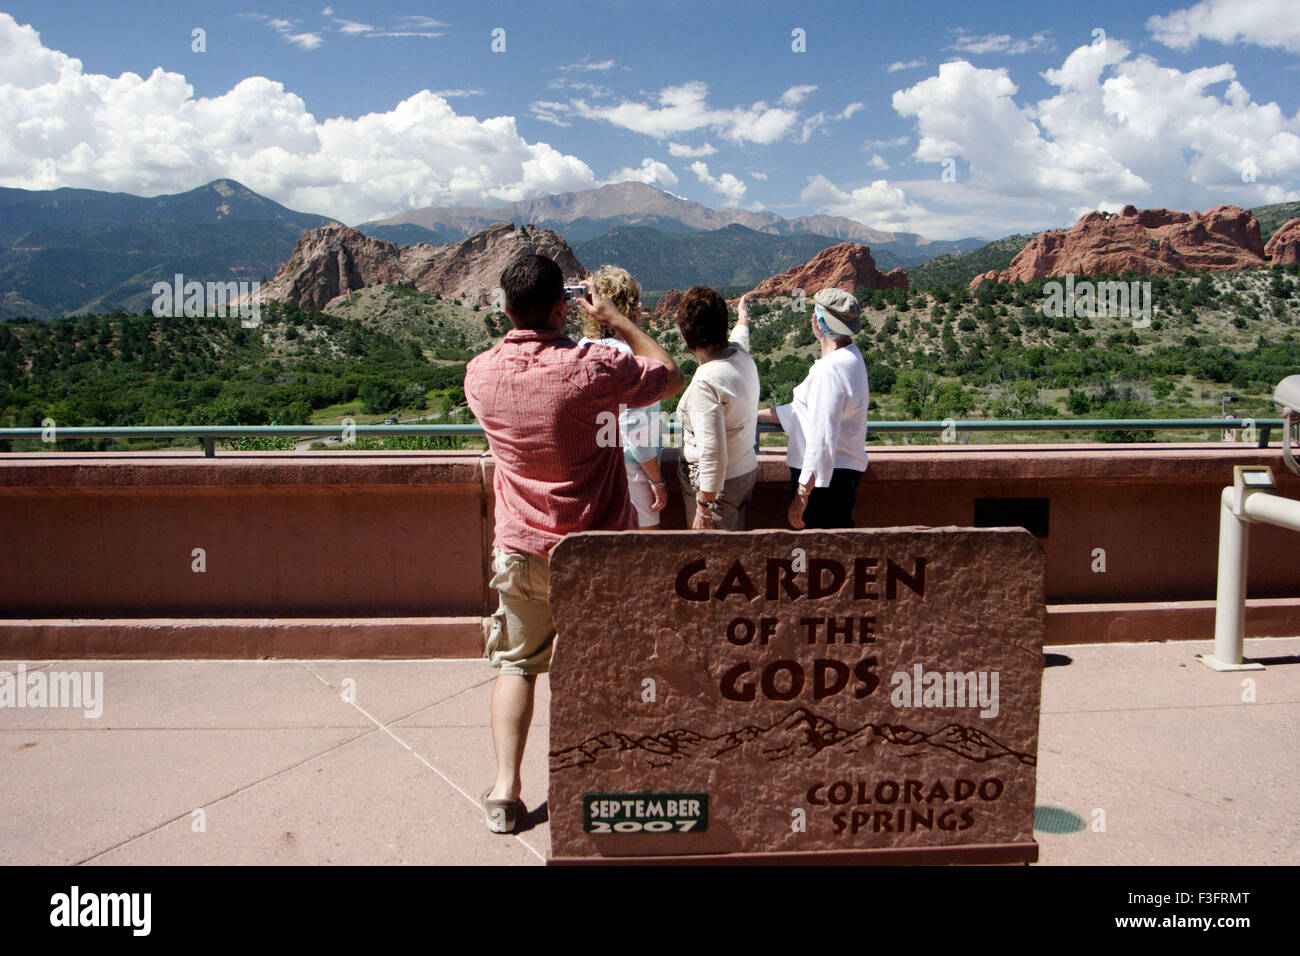 Vue panoramique du jardin d'un dieu au Colorado ; U.S.A. United States of America Banque D'Images